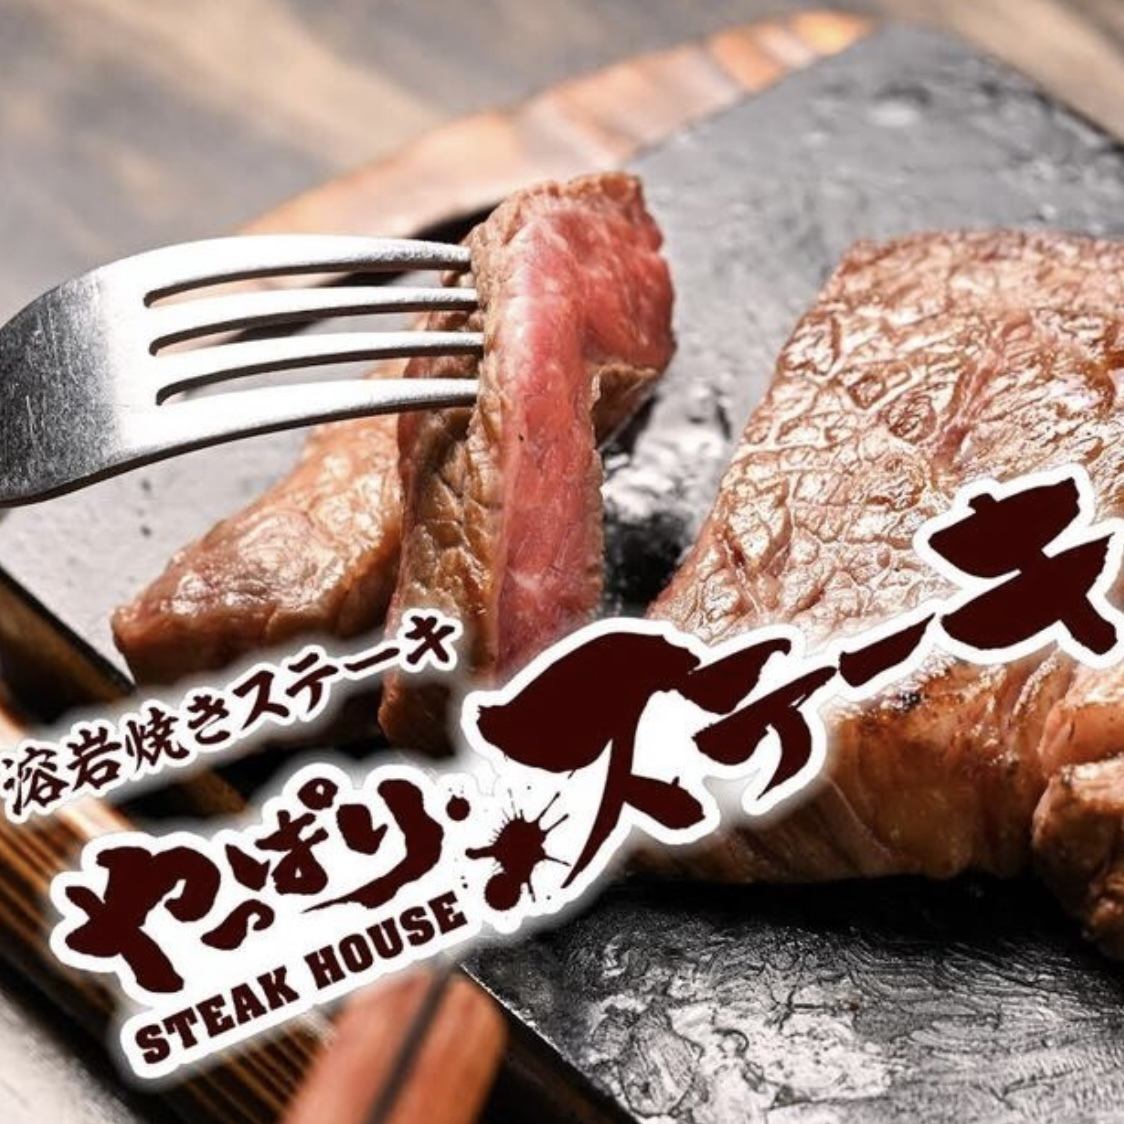 毕竟，在神田也能买到讲究牛排的美味和乐趣的牛排！